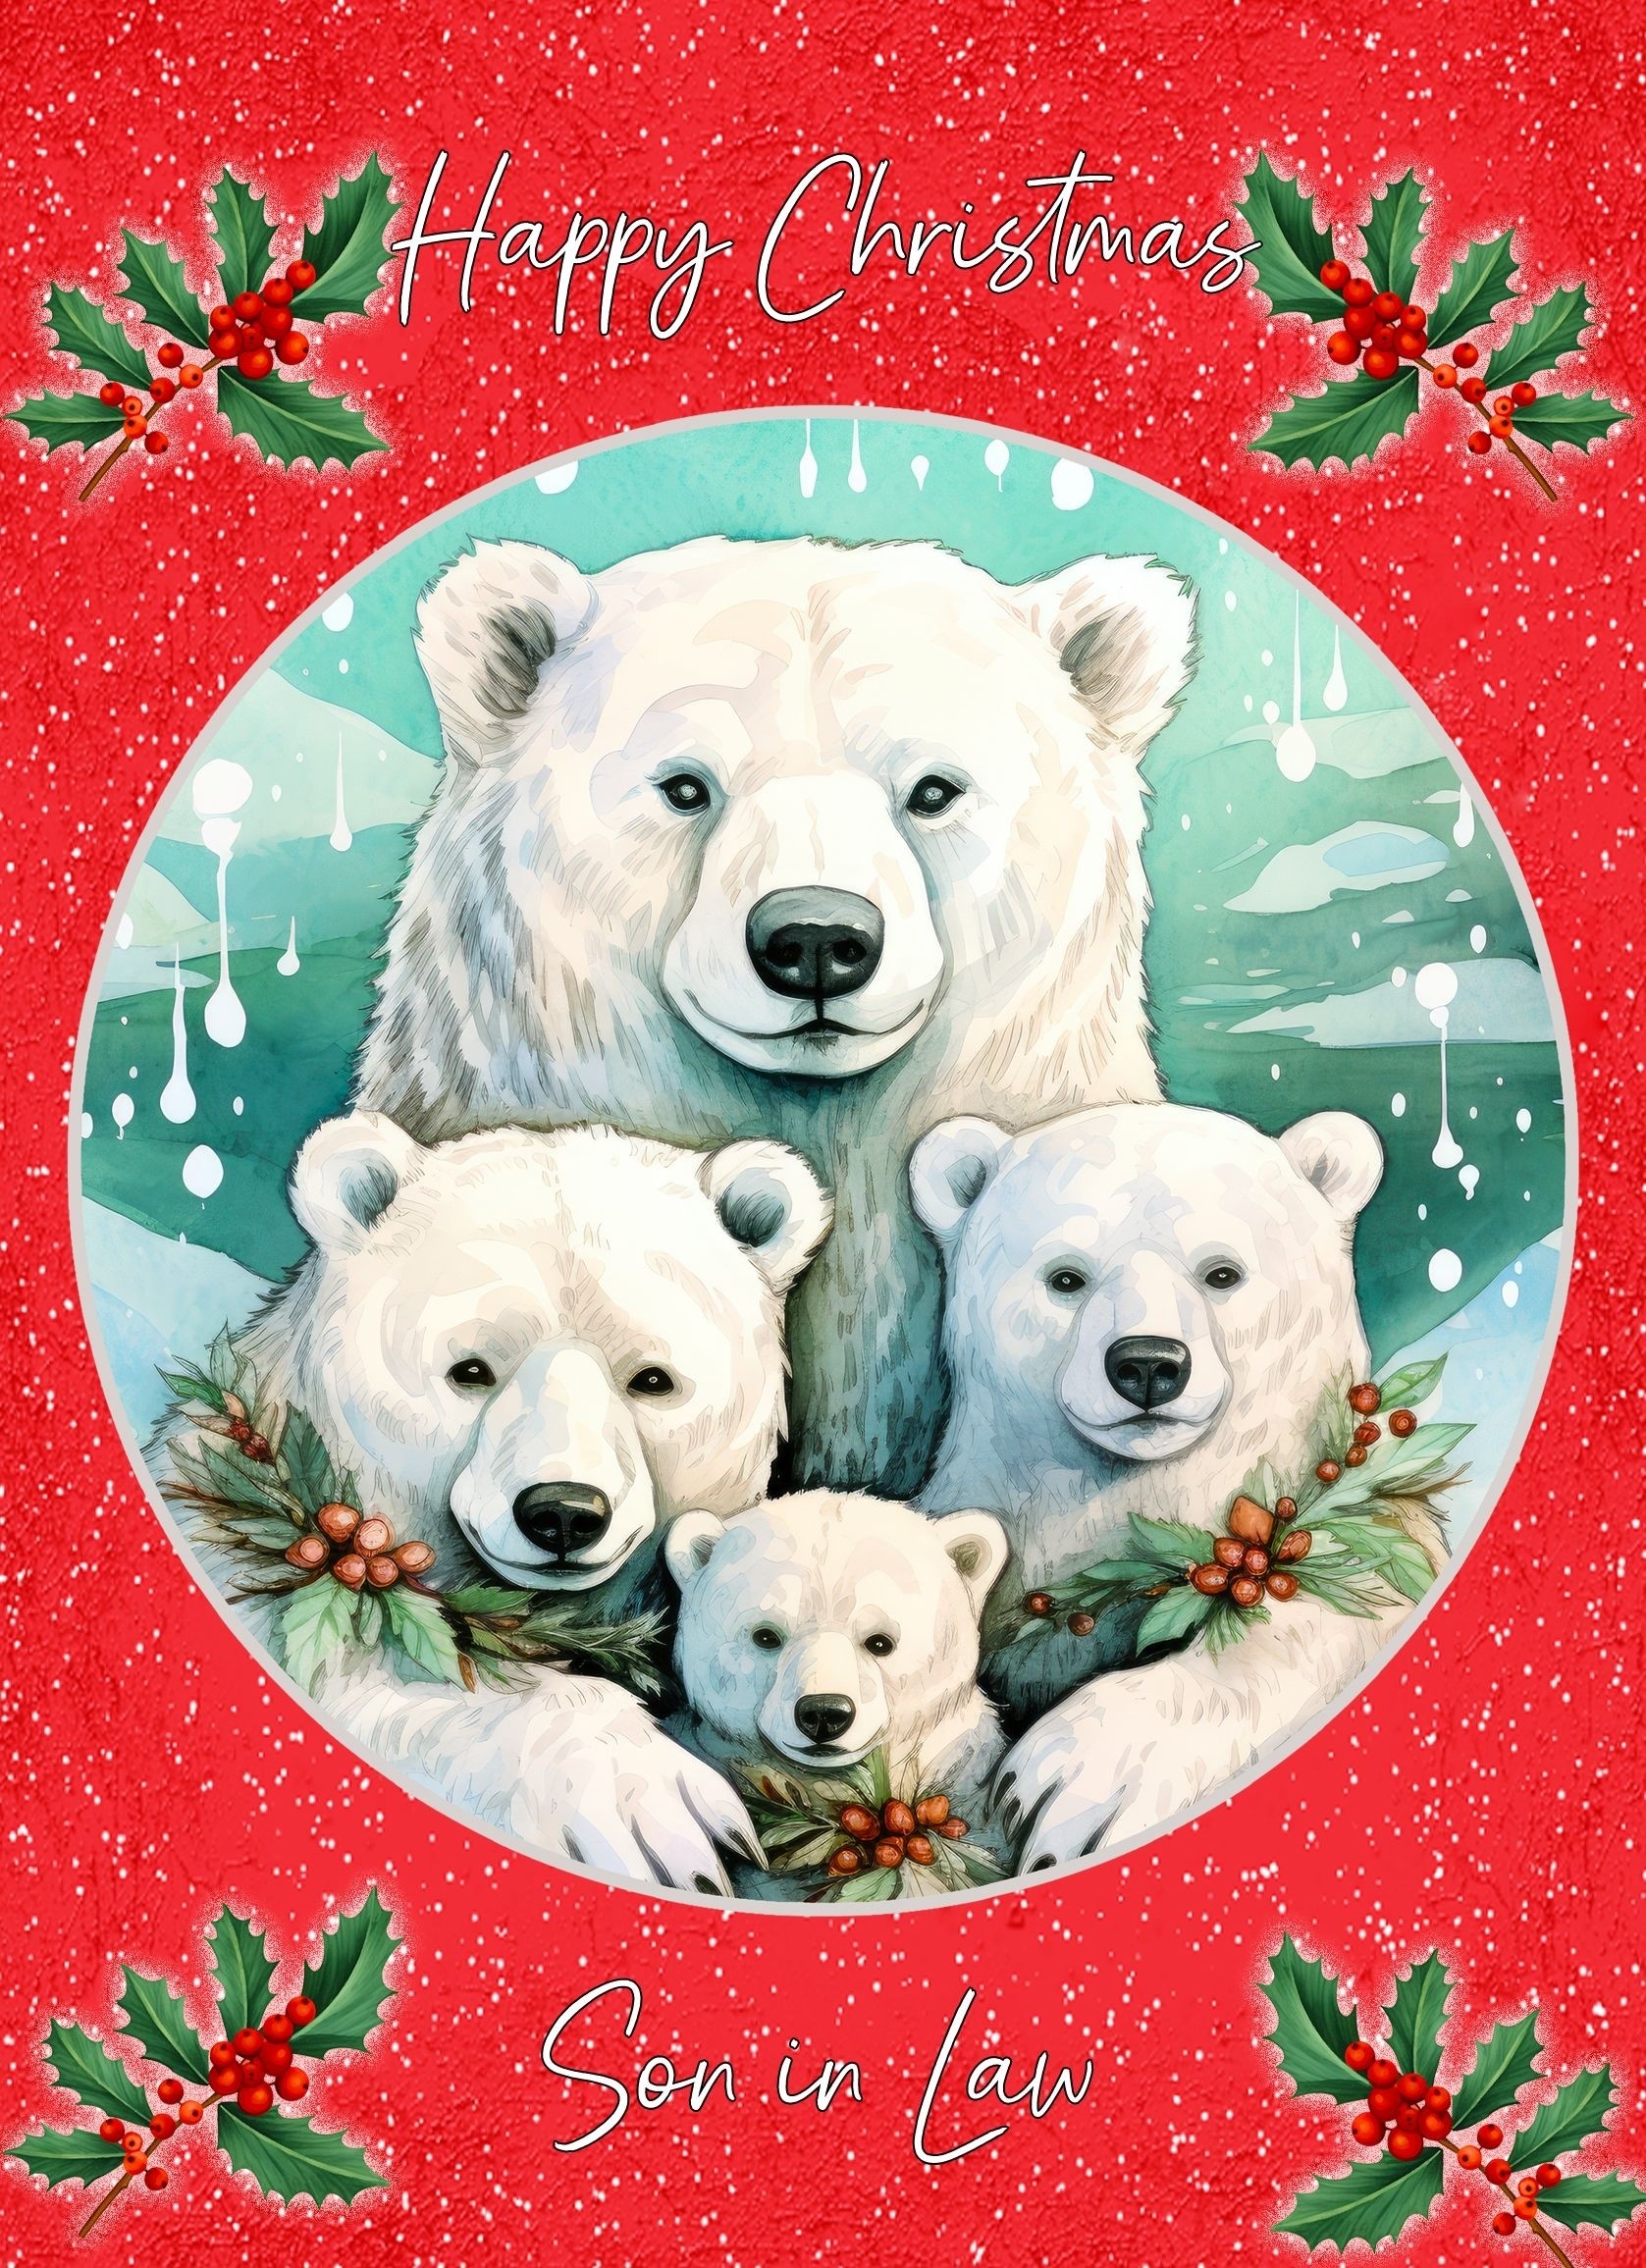 Christmas Card For Son in Law (Globe, Polar Bear Family)